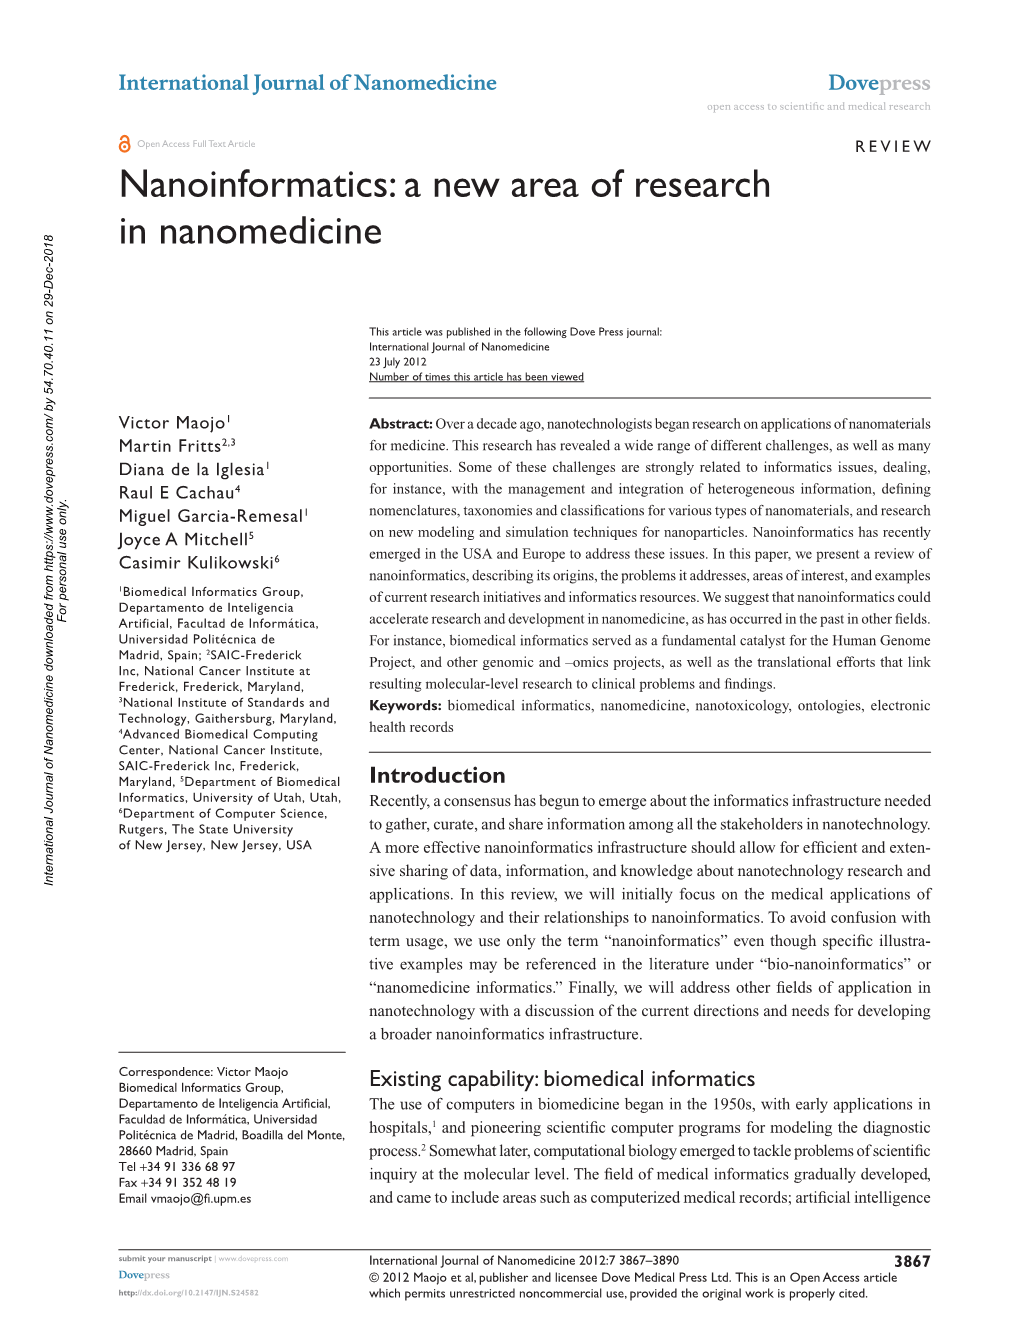 Nanoinformatics: a New Area of Research in Nanomedicine